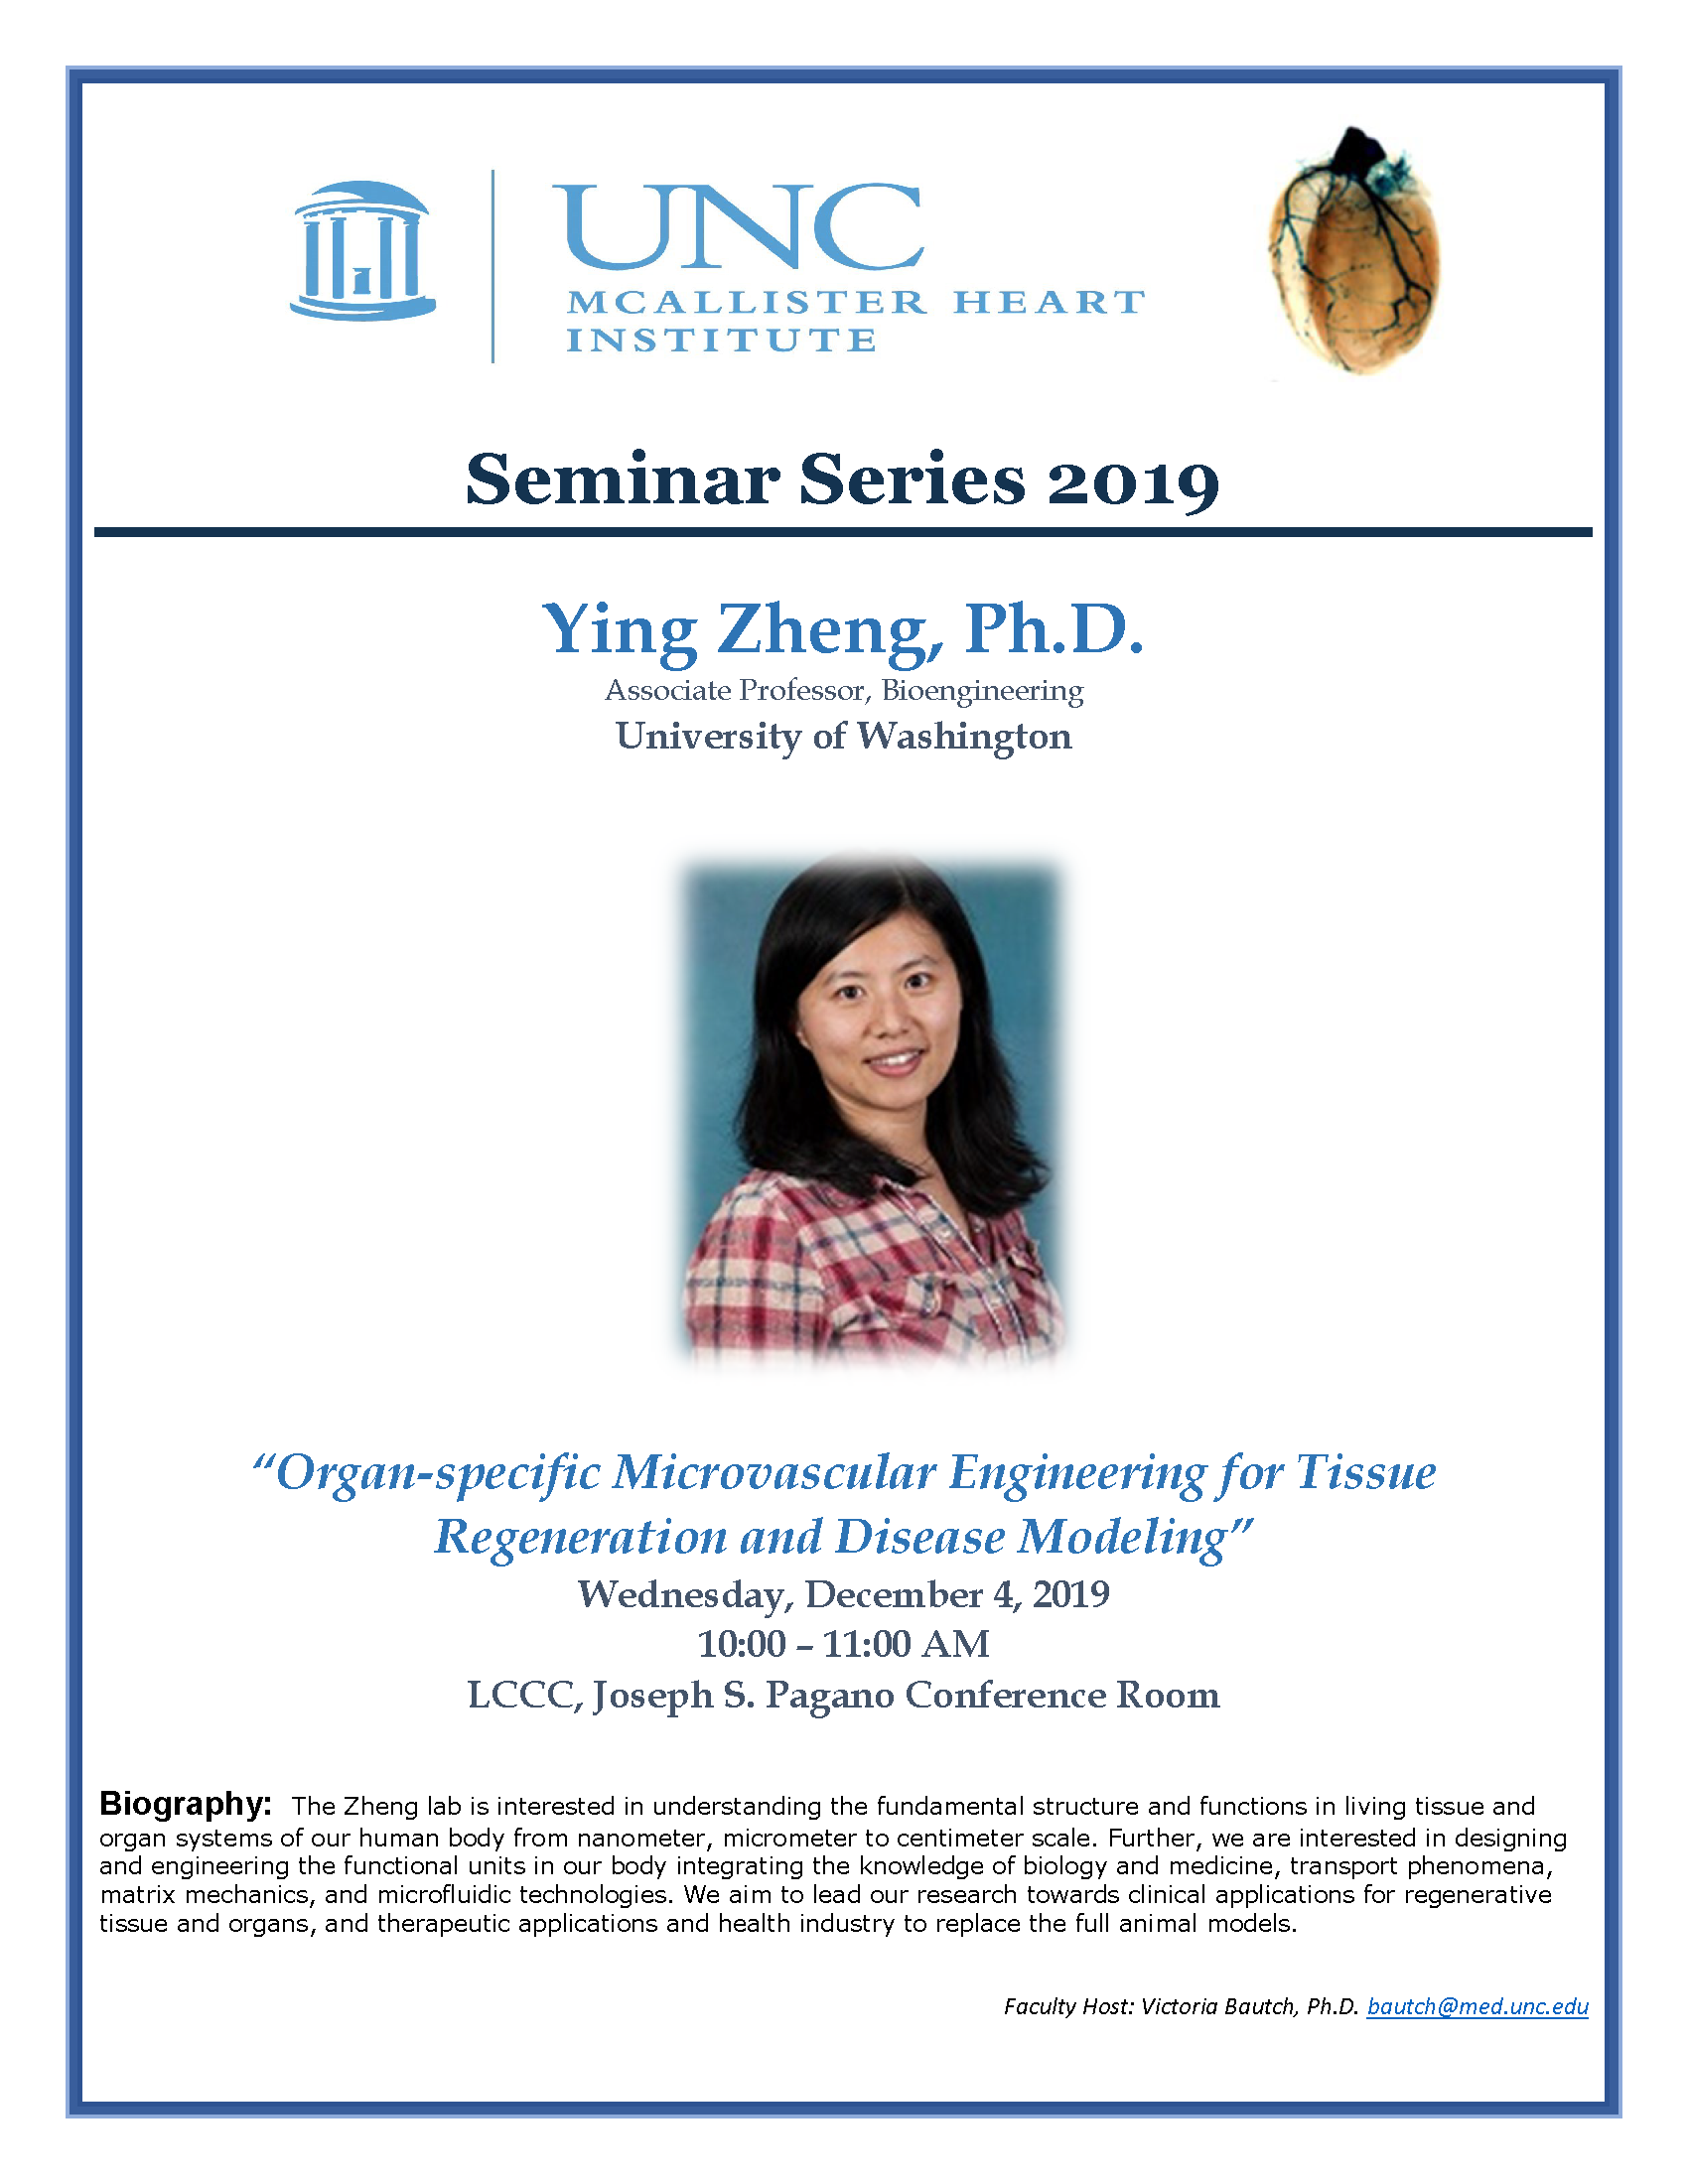 Ying Zheng, Ph.D.